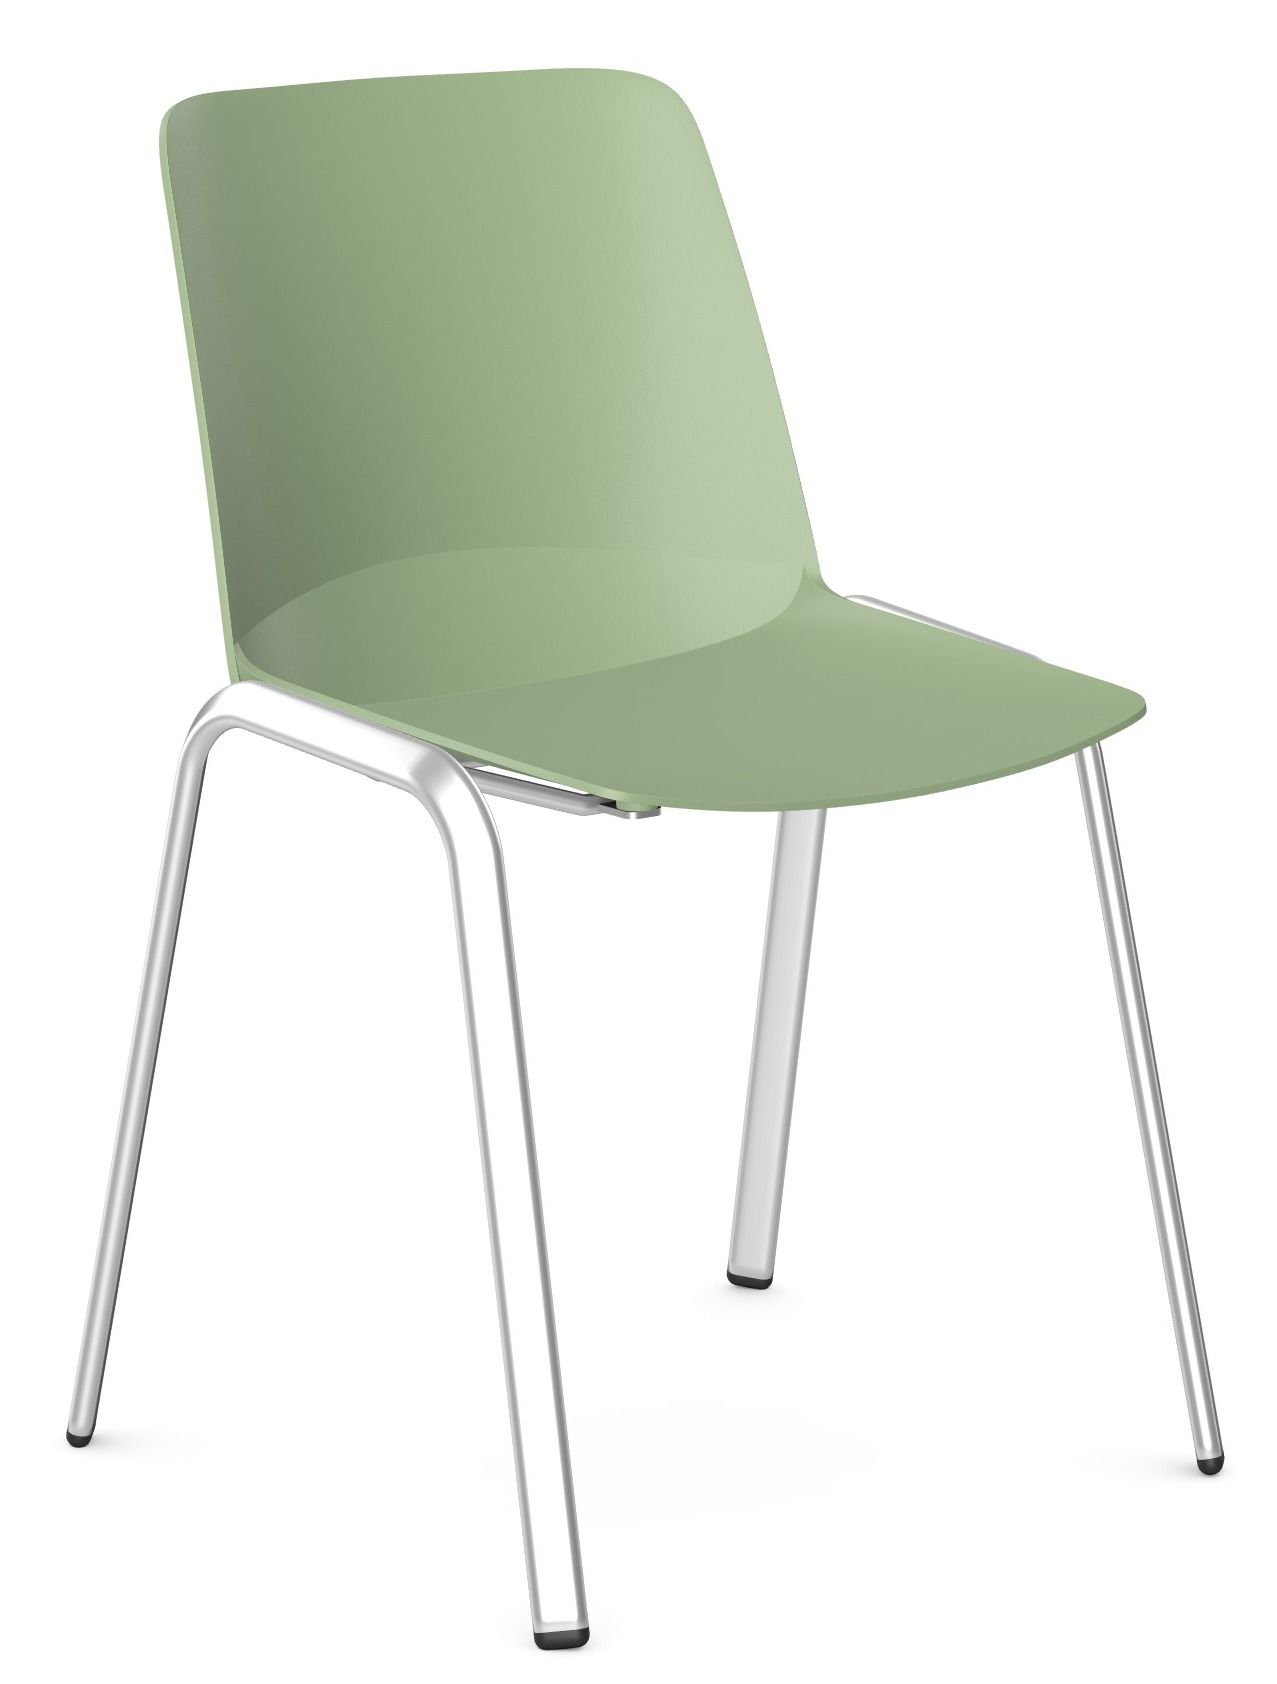 Krzesło dostawne z wytrzymałym kubełkiem z tworzywa oraz na stalowym stelażu malowanym proszkowo lub chromowanym.